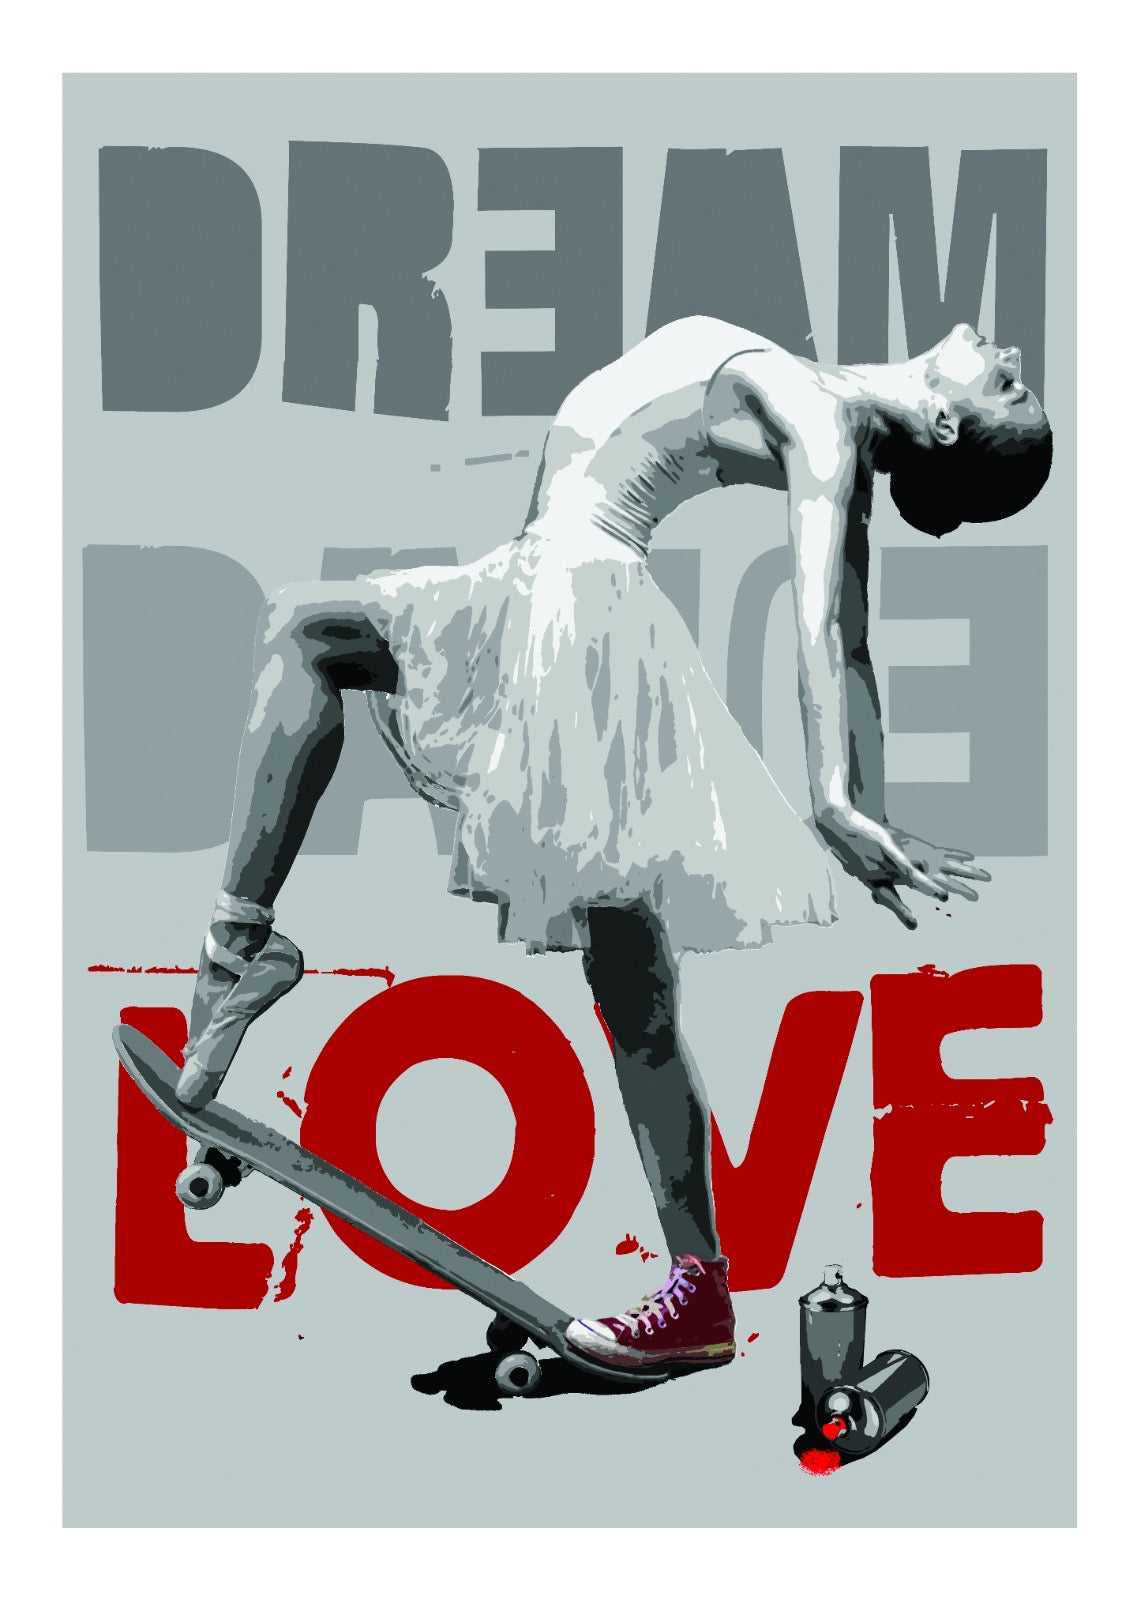 Don't choose. Stampa giclée stampa su carta 320 gsm edizione limitata rspray e stencil su tela rappresentante una ballerina sullo skate, sullo sfondo le parole DREAM (sogno) e LOVE (amore) | Cd Studio d'Arte